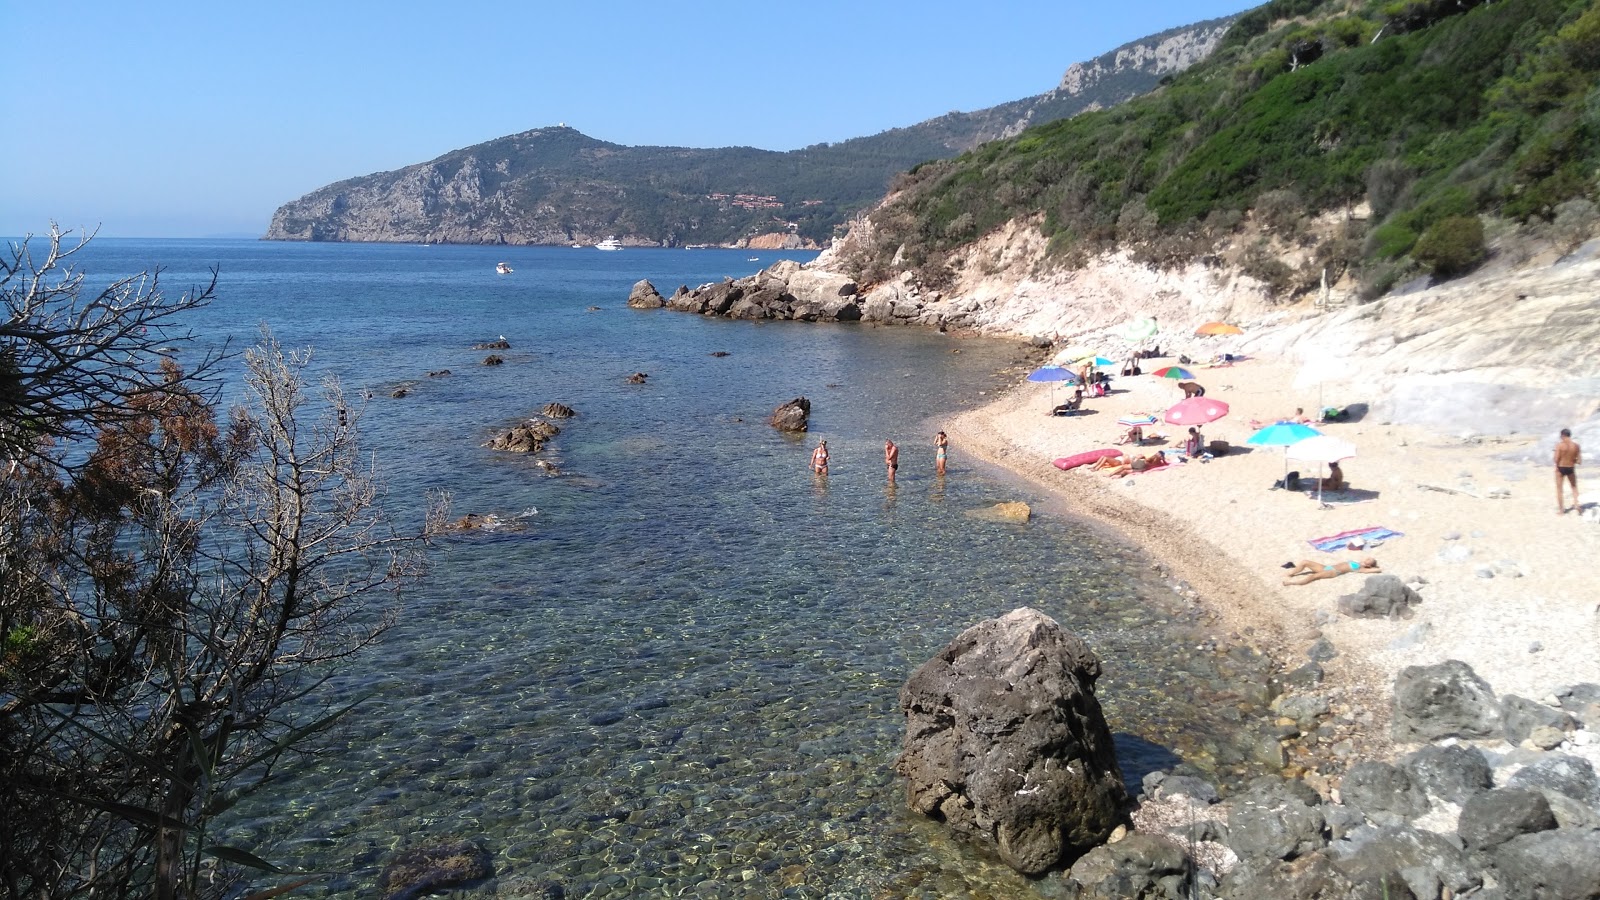 Foto av Spiaggia La Piletta med blått vatten yta